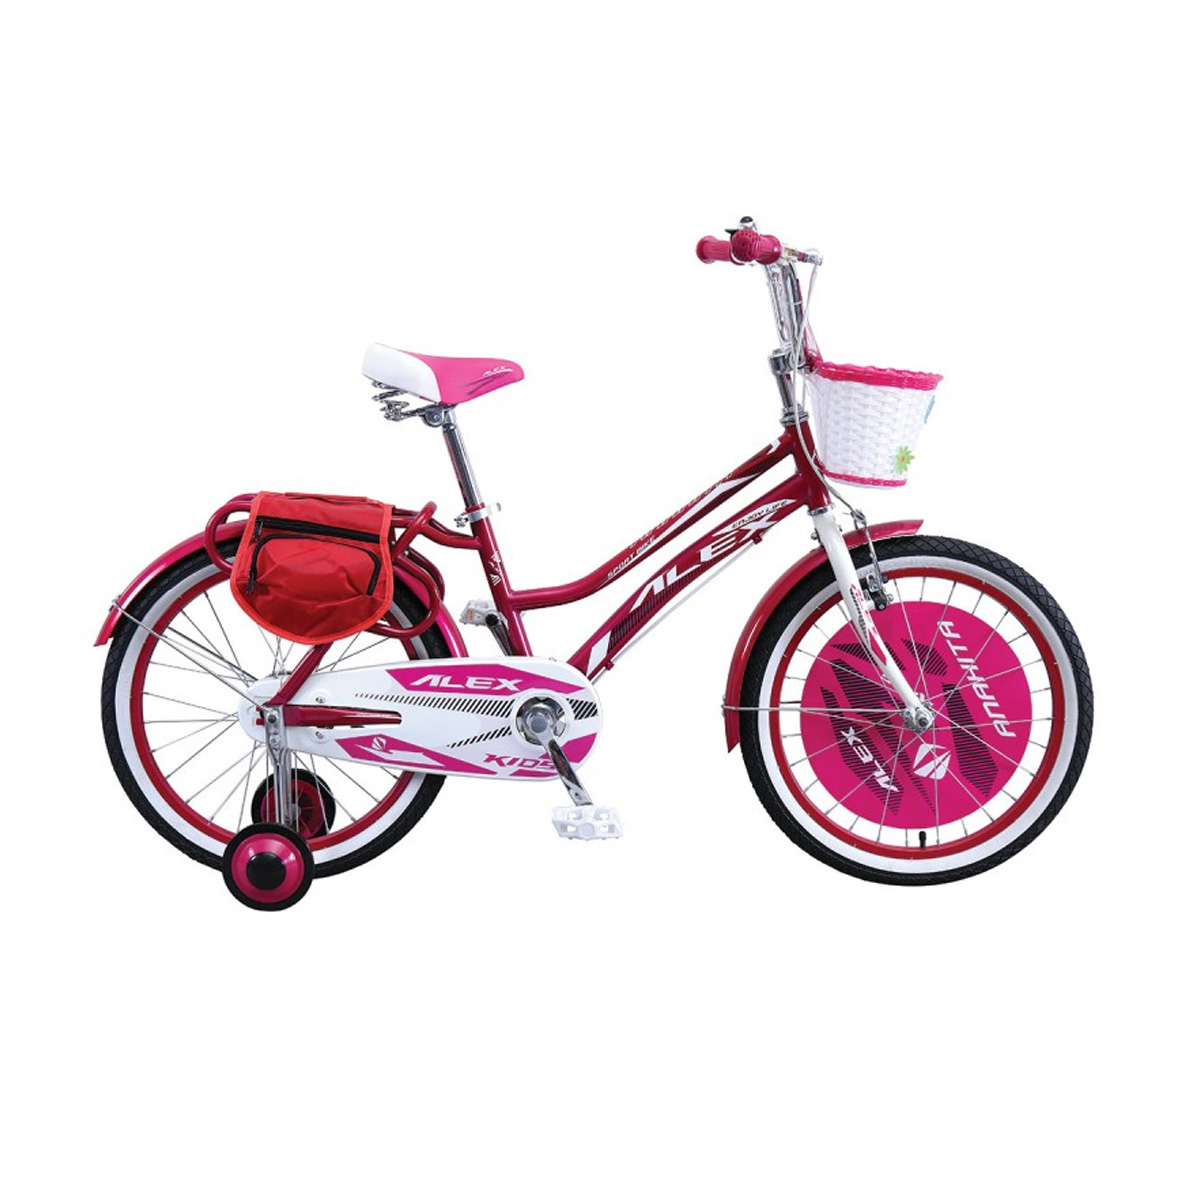 نکته خرید - قیمت روز دوچرخه شهری الکس مدل Anahita کد 423 سایز 20 خرید